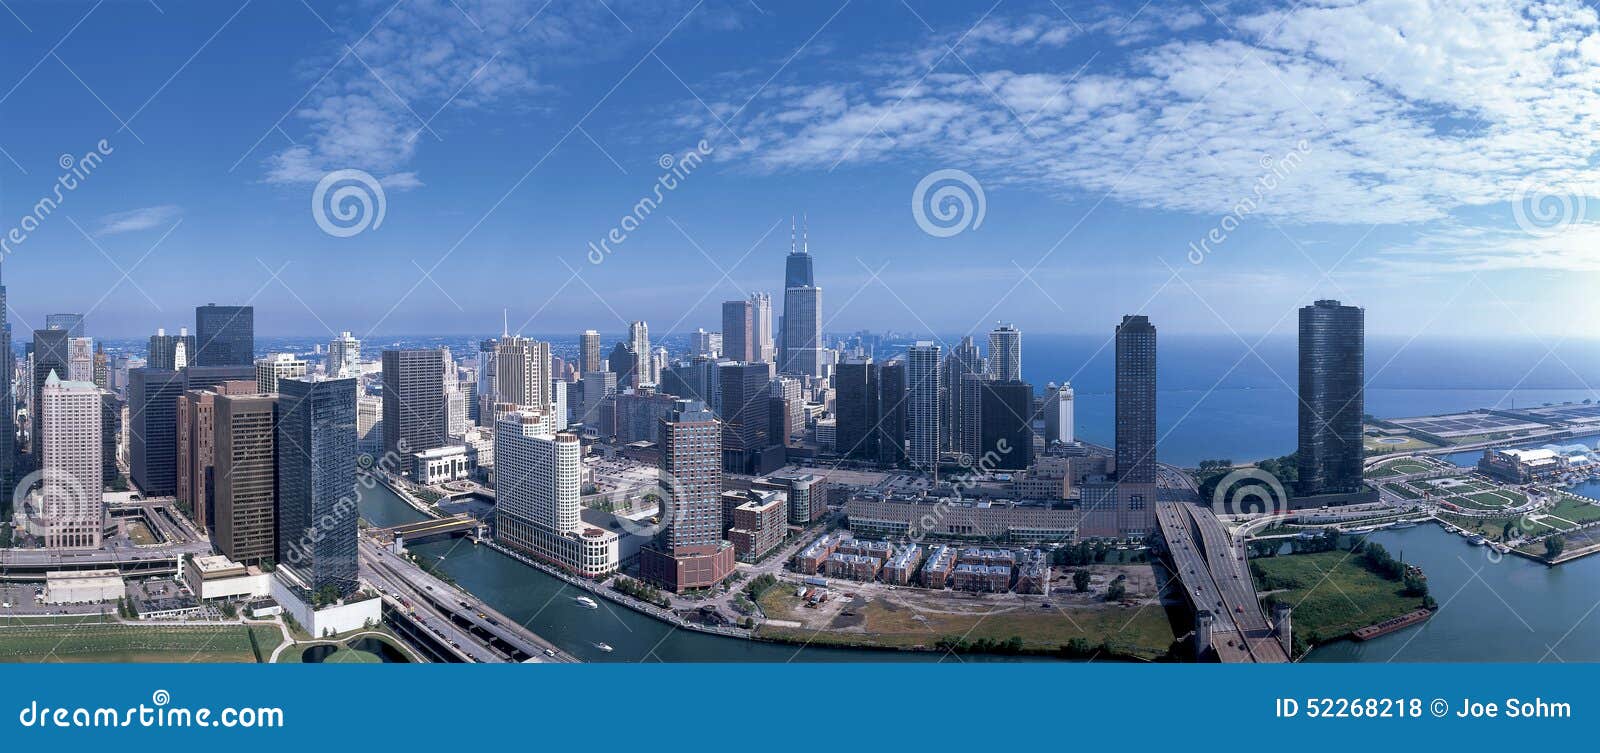 Panoramische Ansicht der Chicago-Skyline